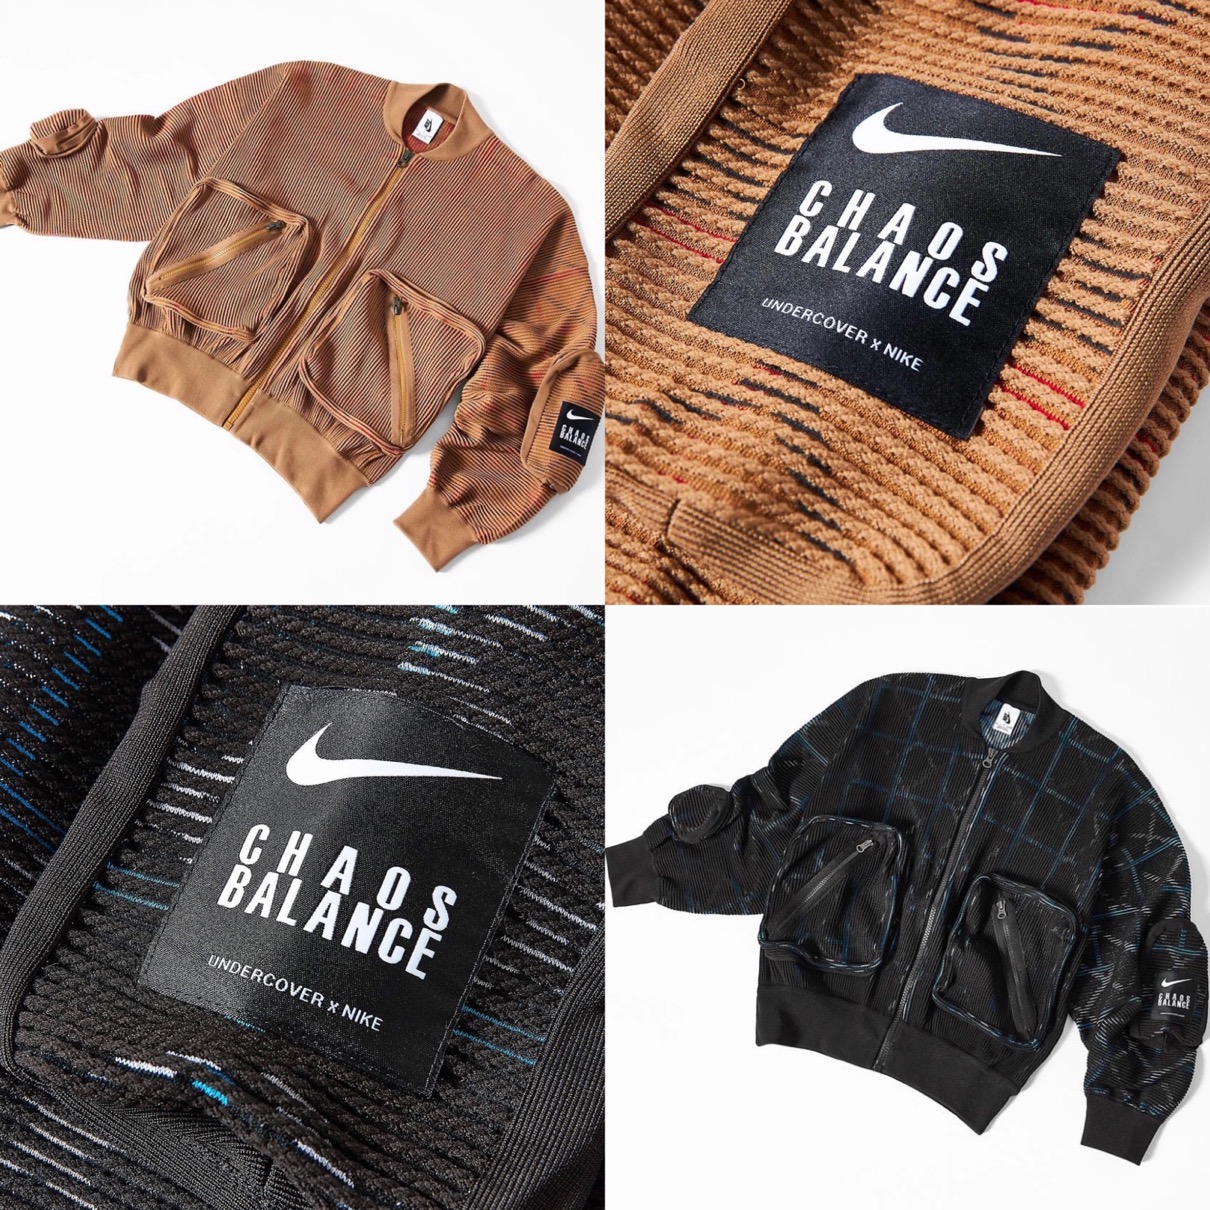 Nike Undercover オリジナル素材のma 1 ボンバージャケットが国内2月19日に発売予定 Up To Date